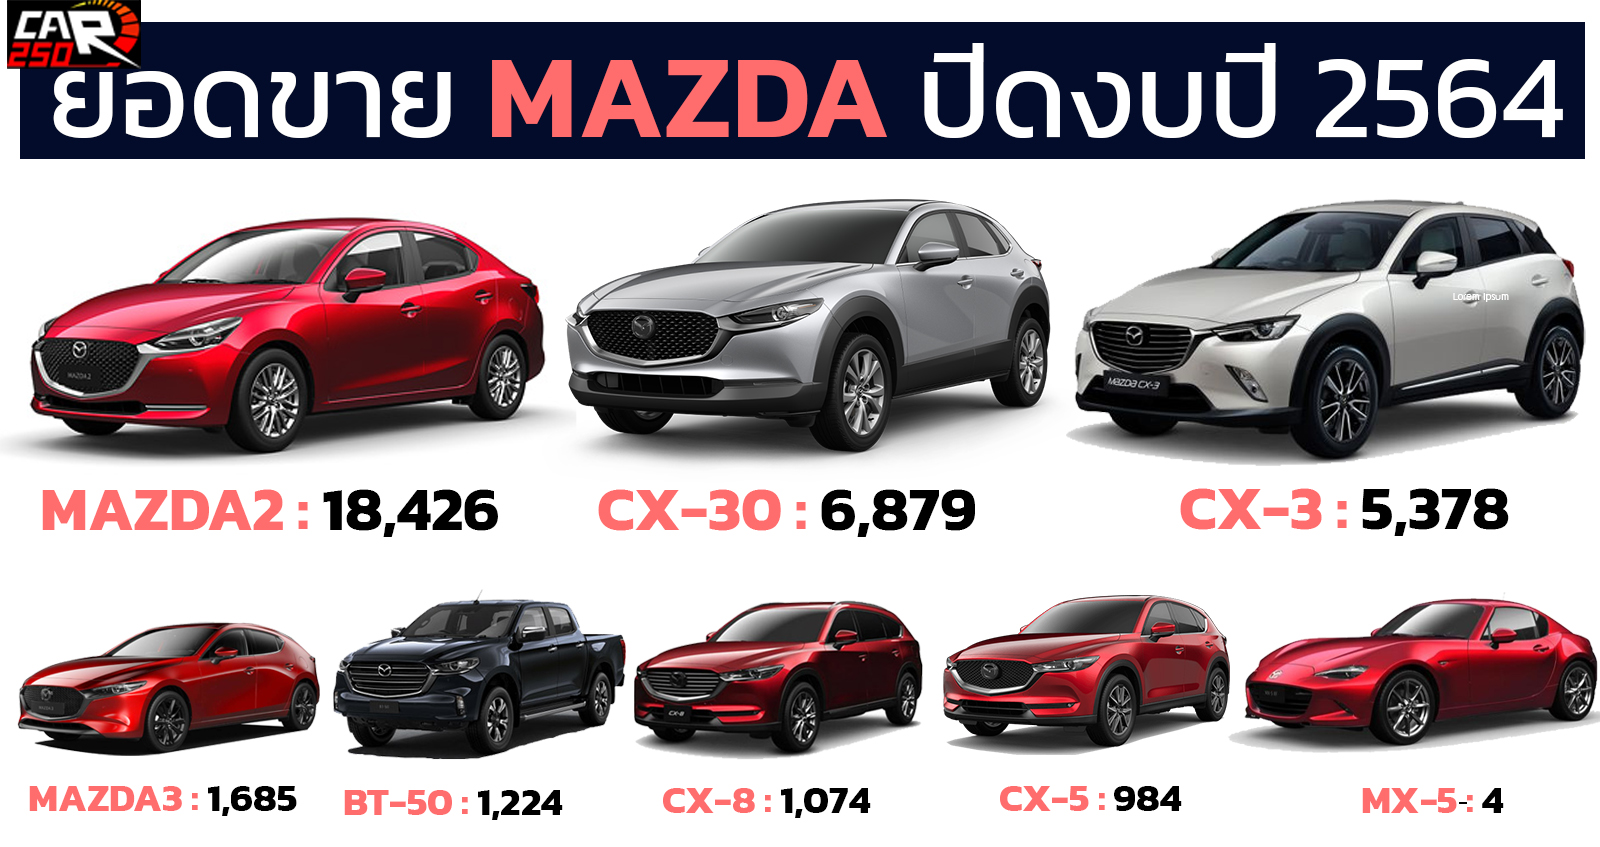 ยอดขาย MAZDA ประจำงบปี 2564 รวม 35,654 คัน